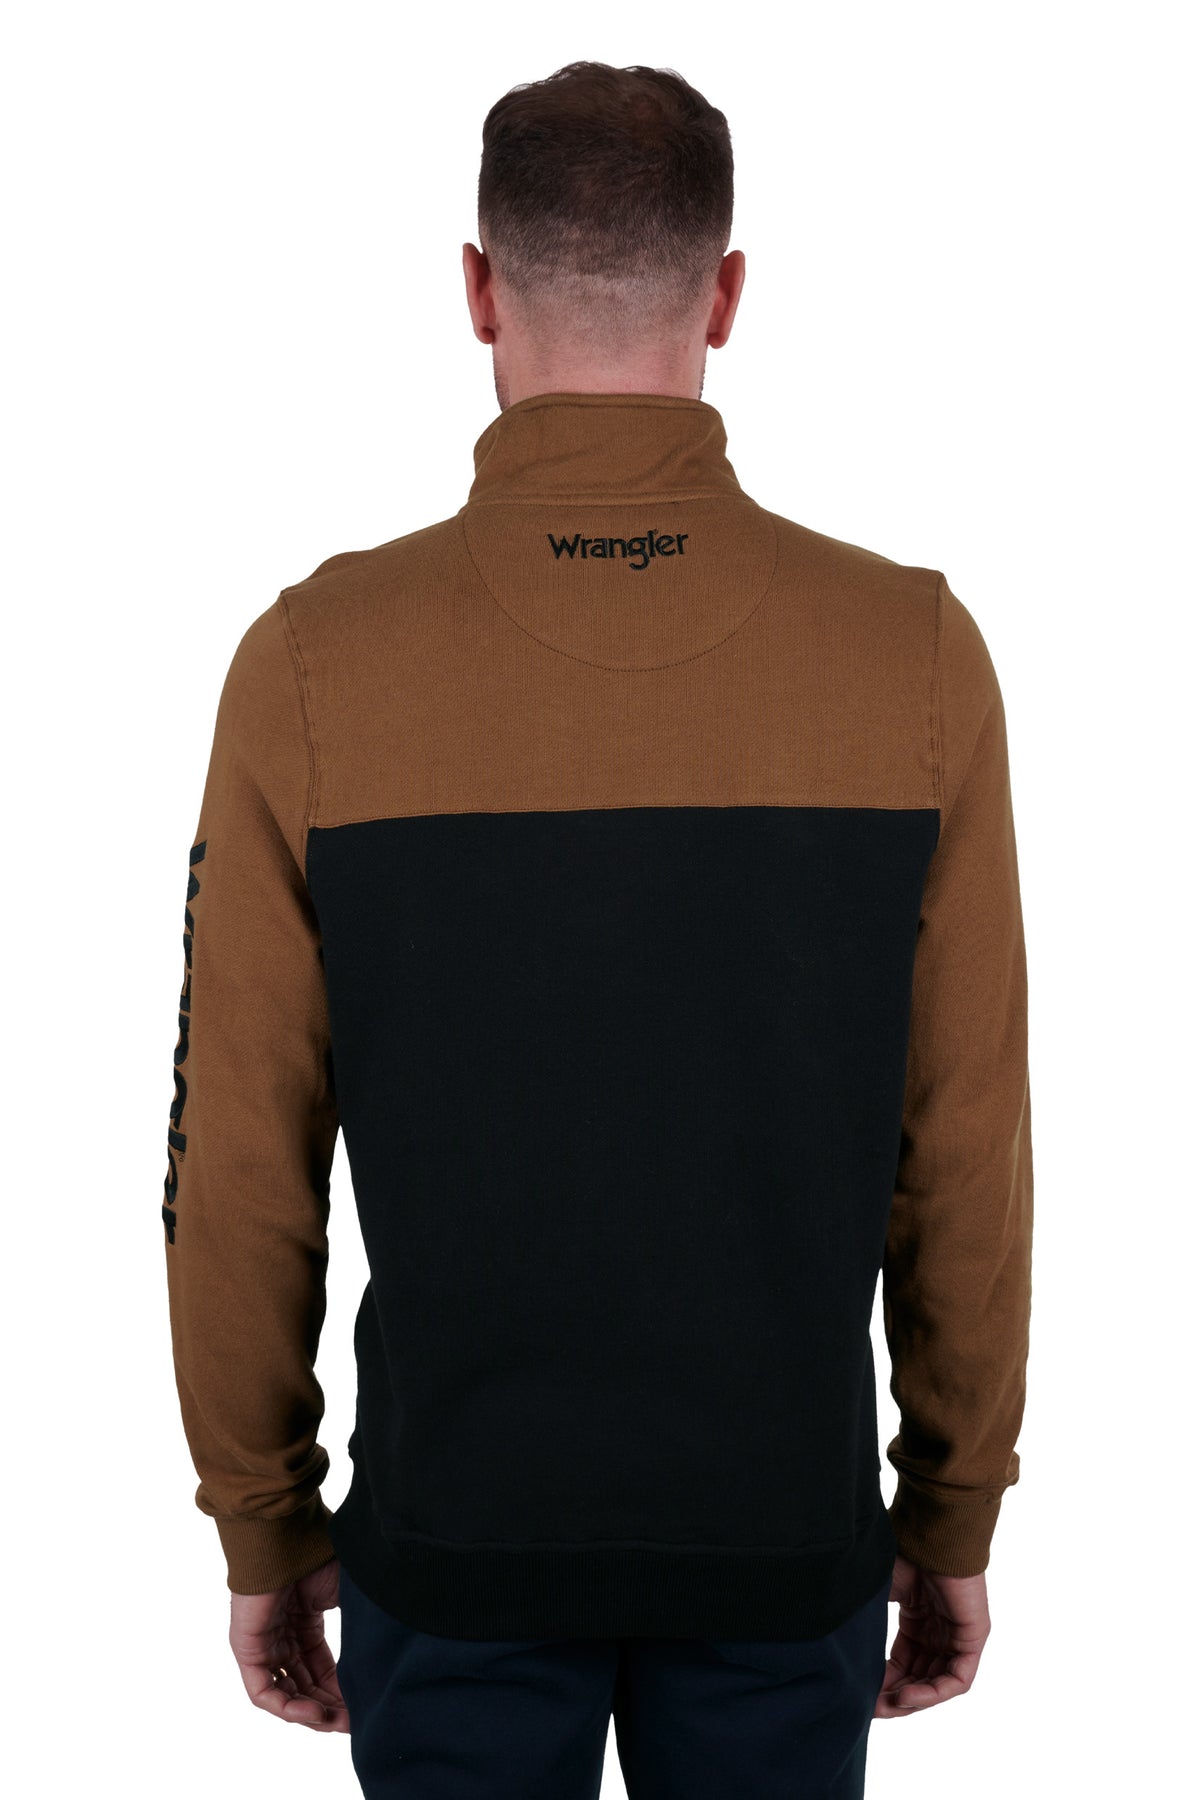 Wrangler Mens Barlett 1/4 Zip Pullover - Black/Dark Tan